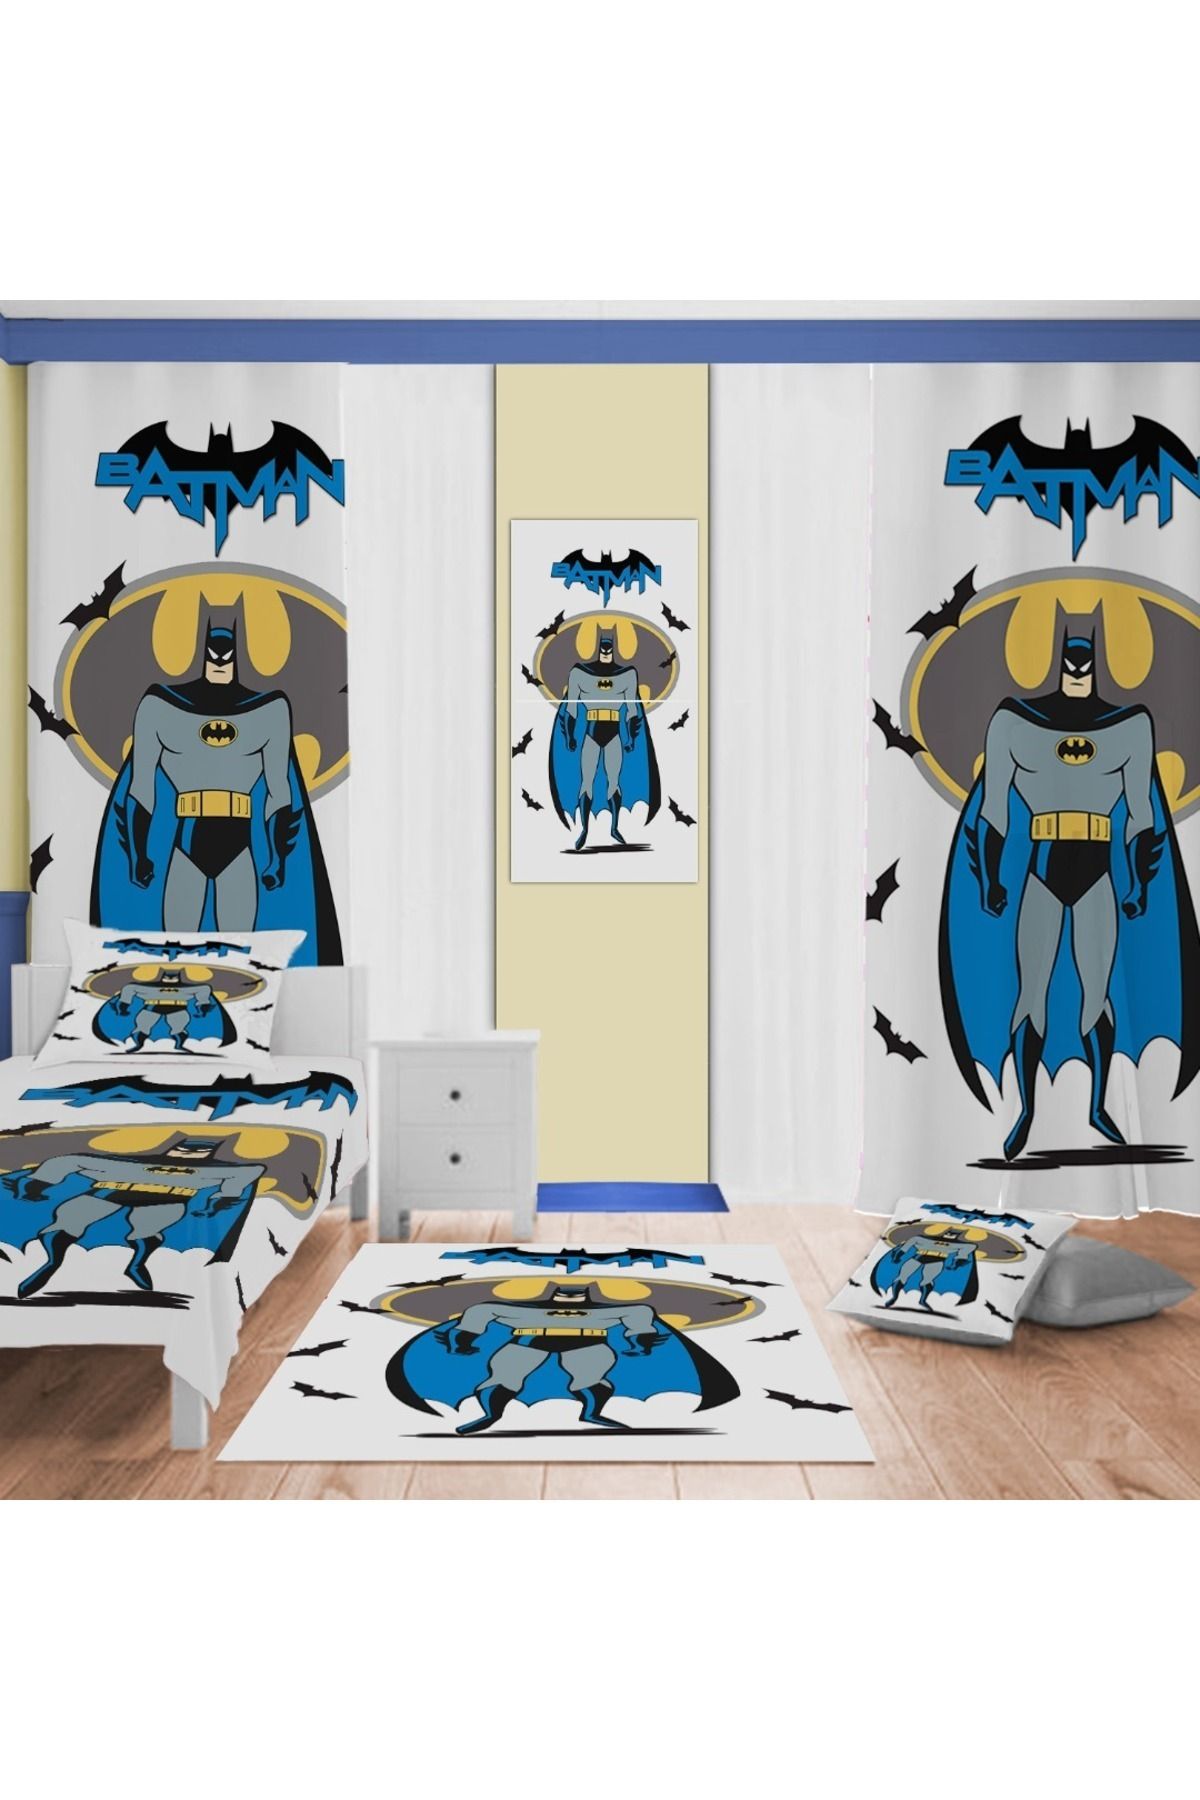 Evan Home Beyaz Batman Desenli Çocuk Odası Takım Perde (iki Kanat),Yatak Örtüsü,Yastık,Kırlent ,Halı,Tablo